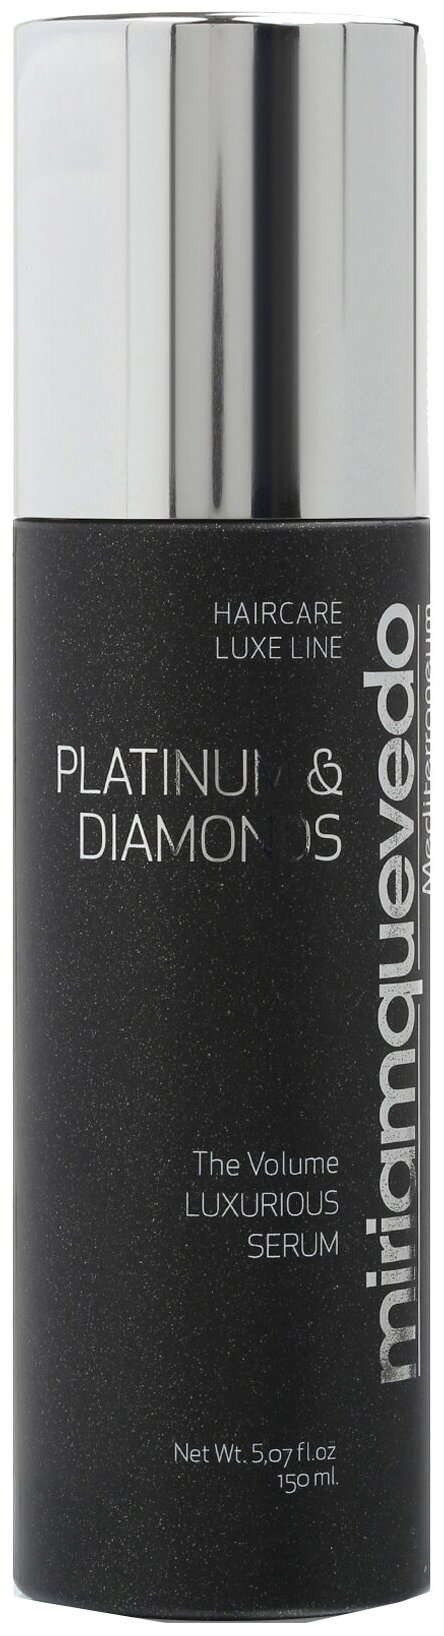 Бриллиантовая cыворотка-люкс для волос с платиной Miriam Quevedo Platinum & Diamonds The Volume Luxurious Serum 150 мл